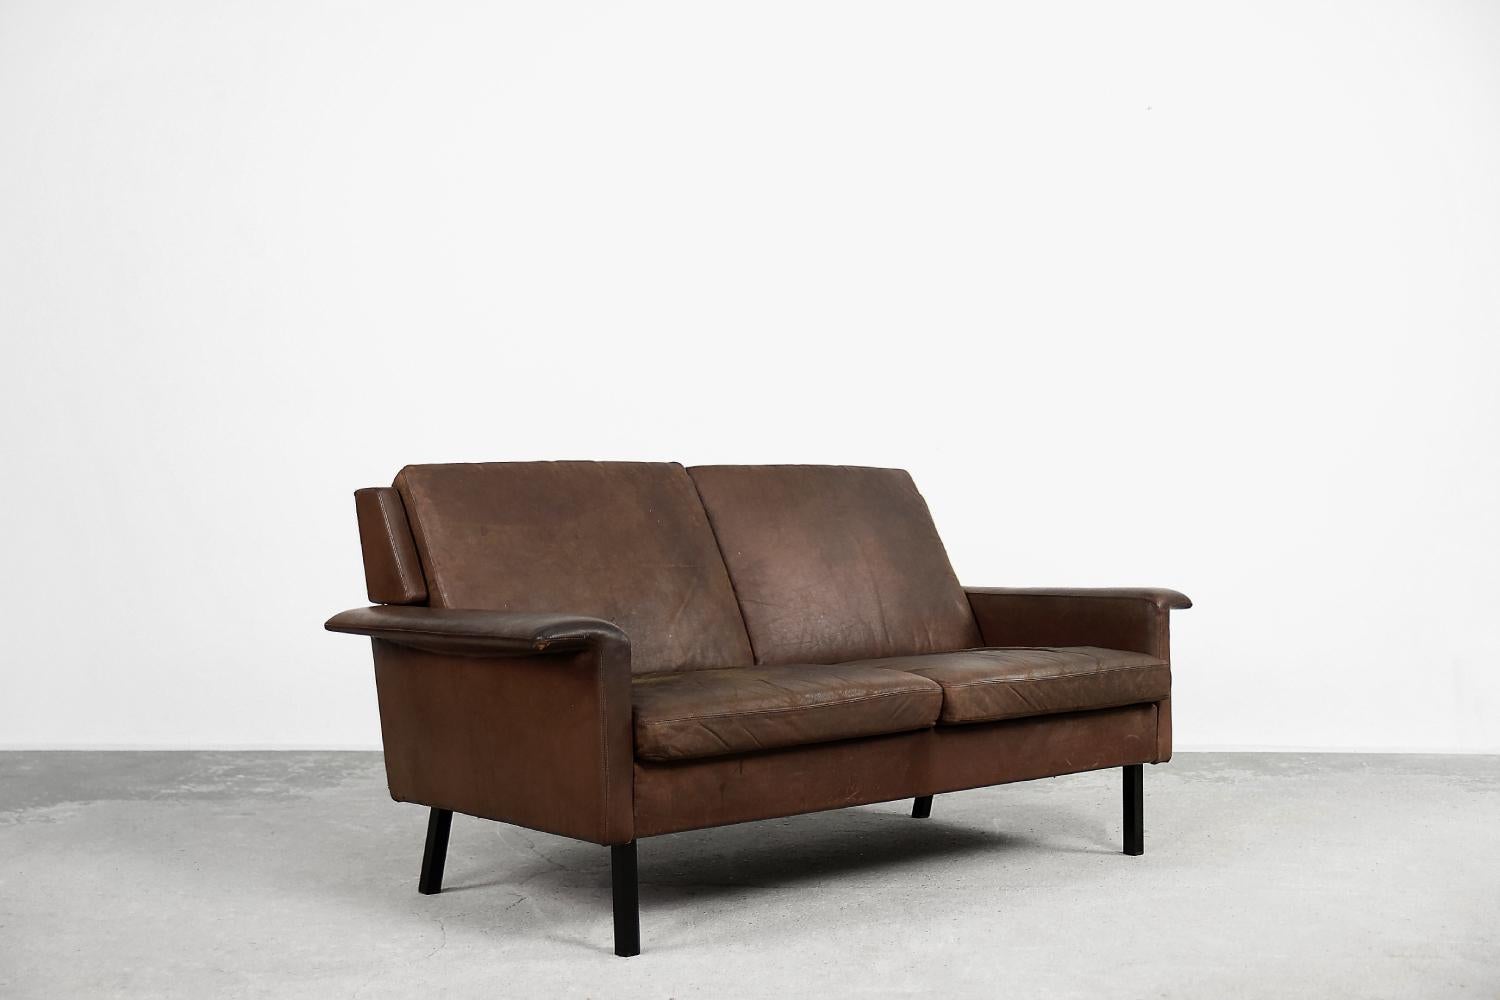 Ce canapé deux places, modèle 3330, a été conçu par Arne Vodder pour le fabricant danois Fritz Hansen dans les années 1960. Une pièce de musée, rarement disponible à la vente, surtout dans la version biplace. Ce canapé est revêtu d'un cuir naturel